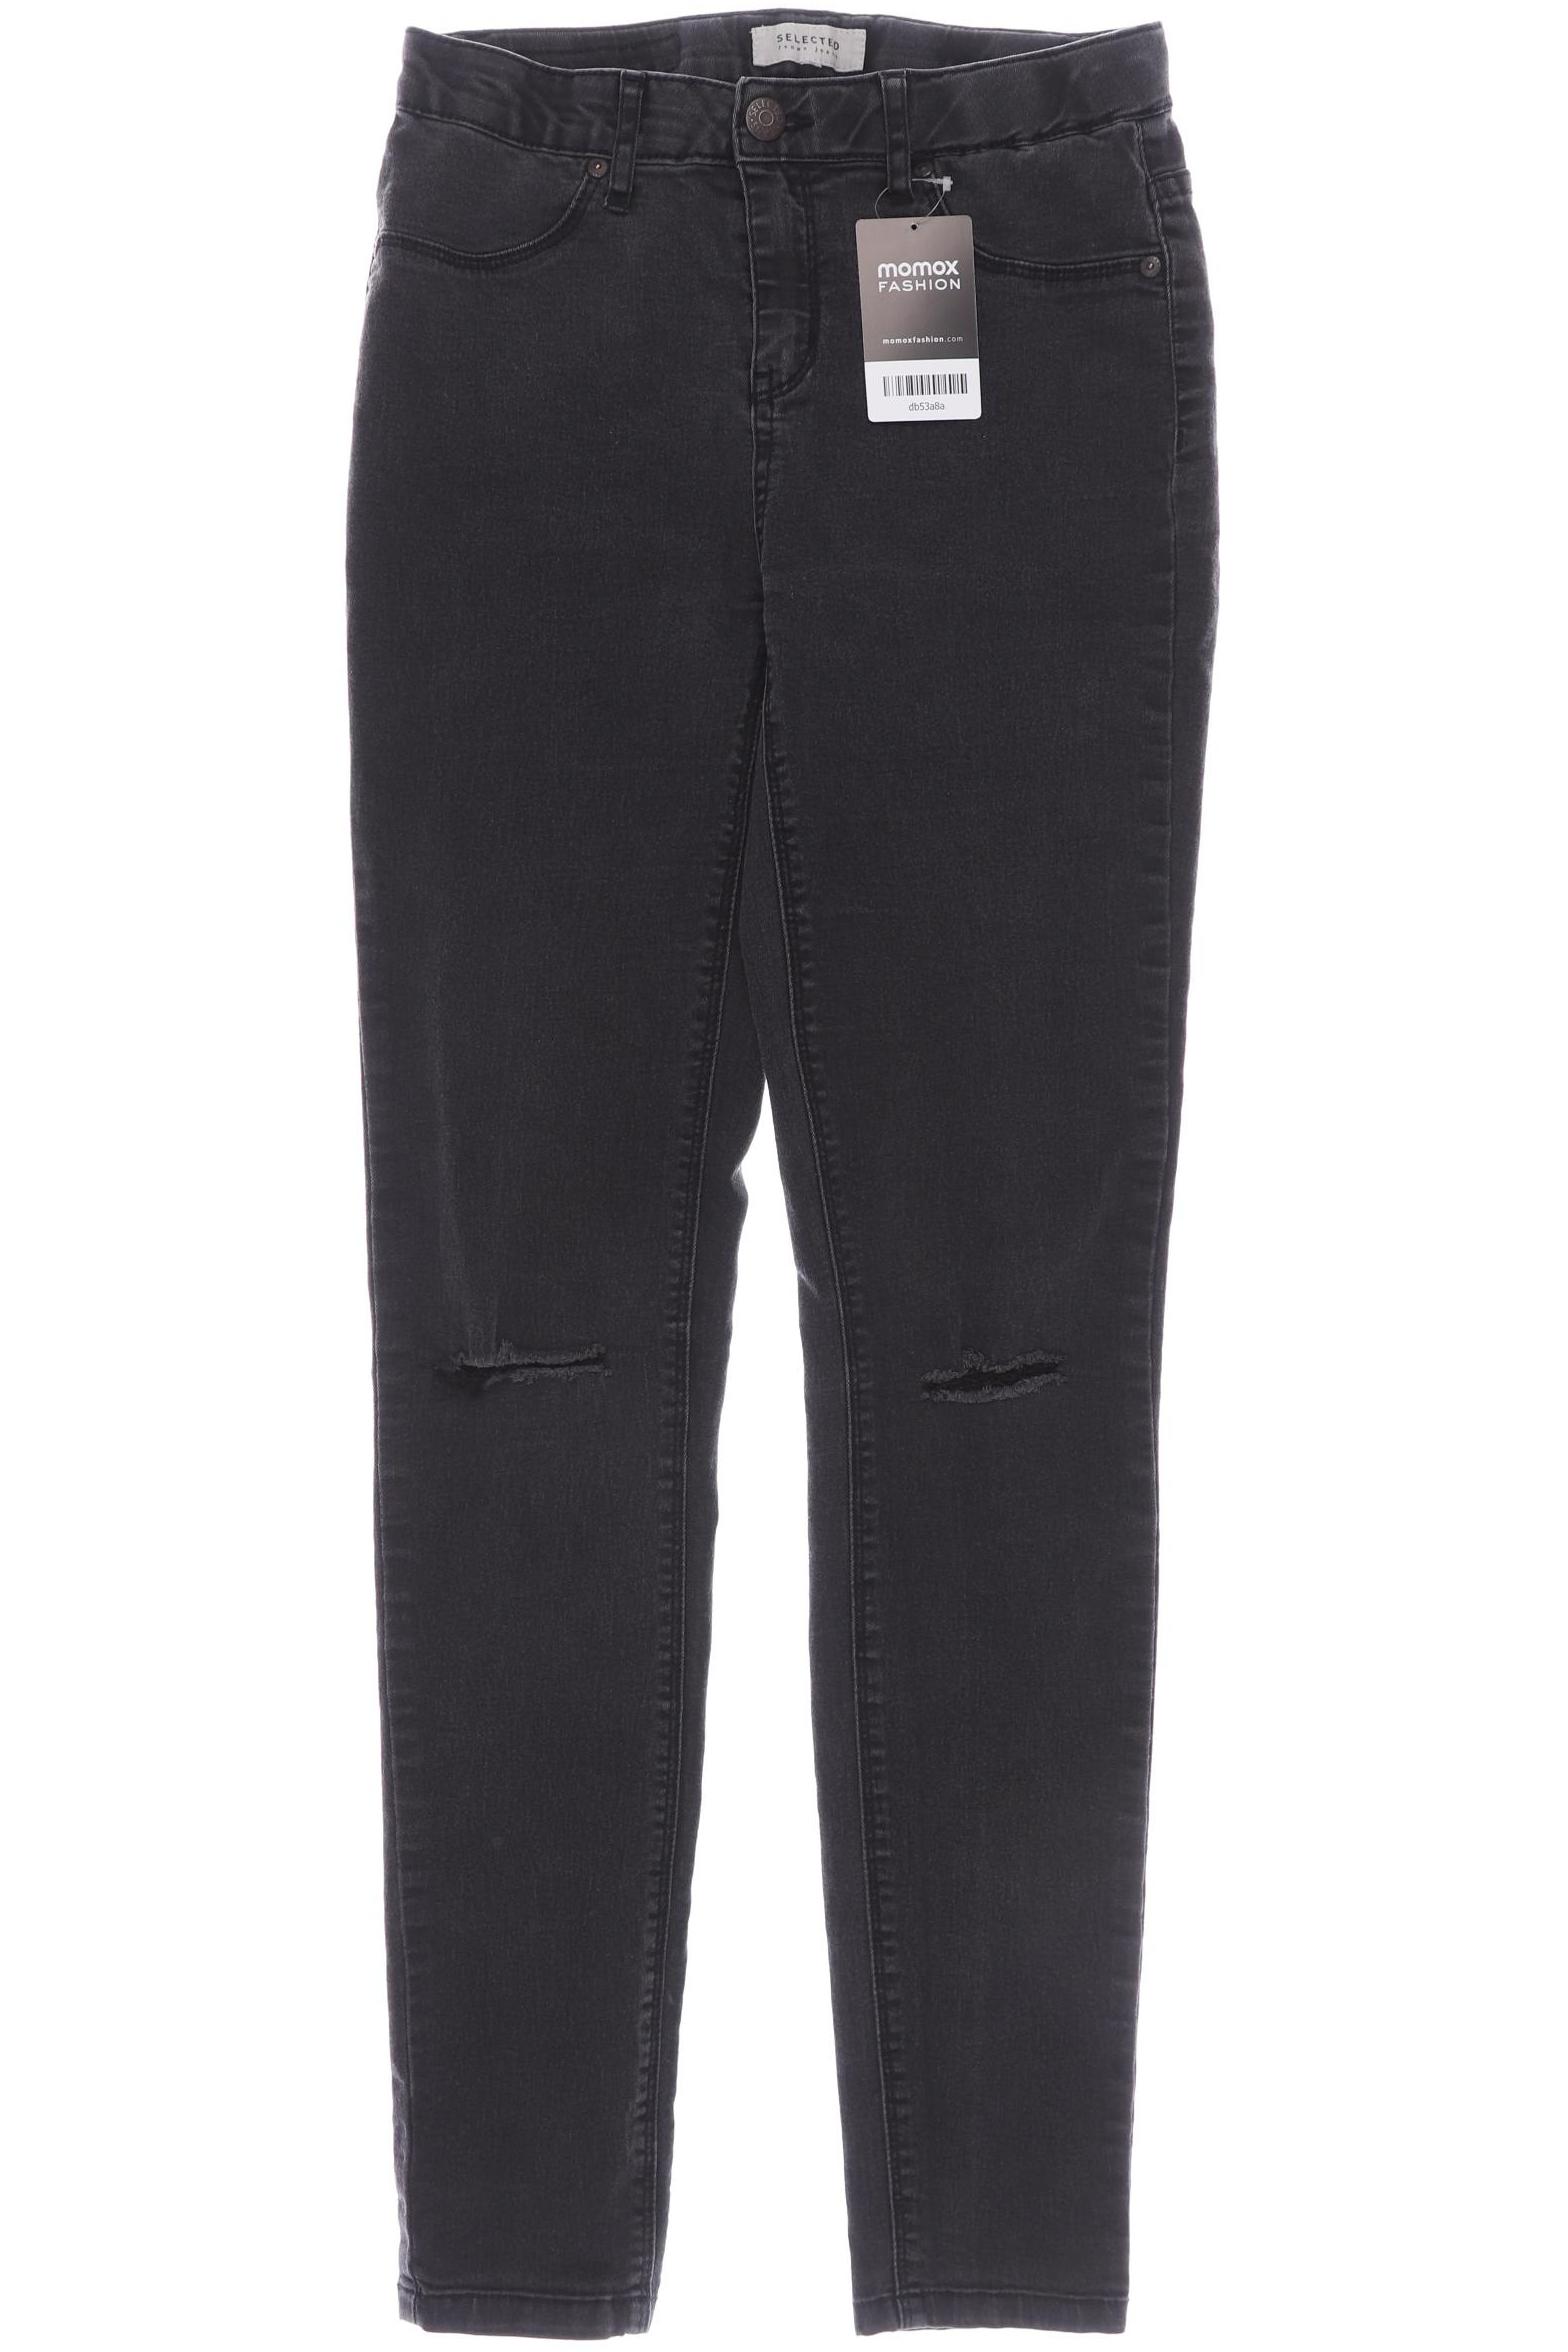 SELECTED Damen Jeans, schwarz von Selected